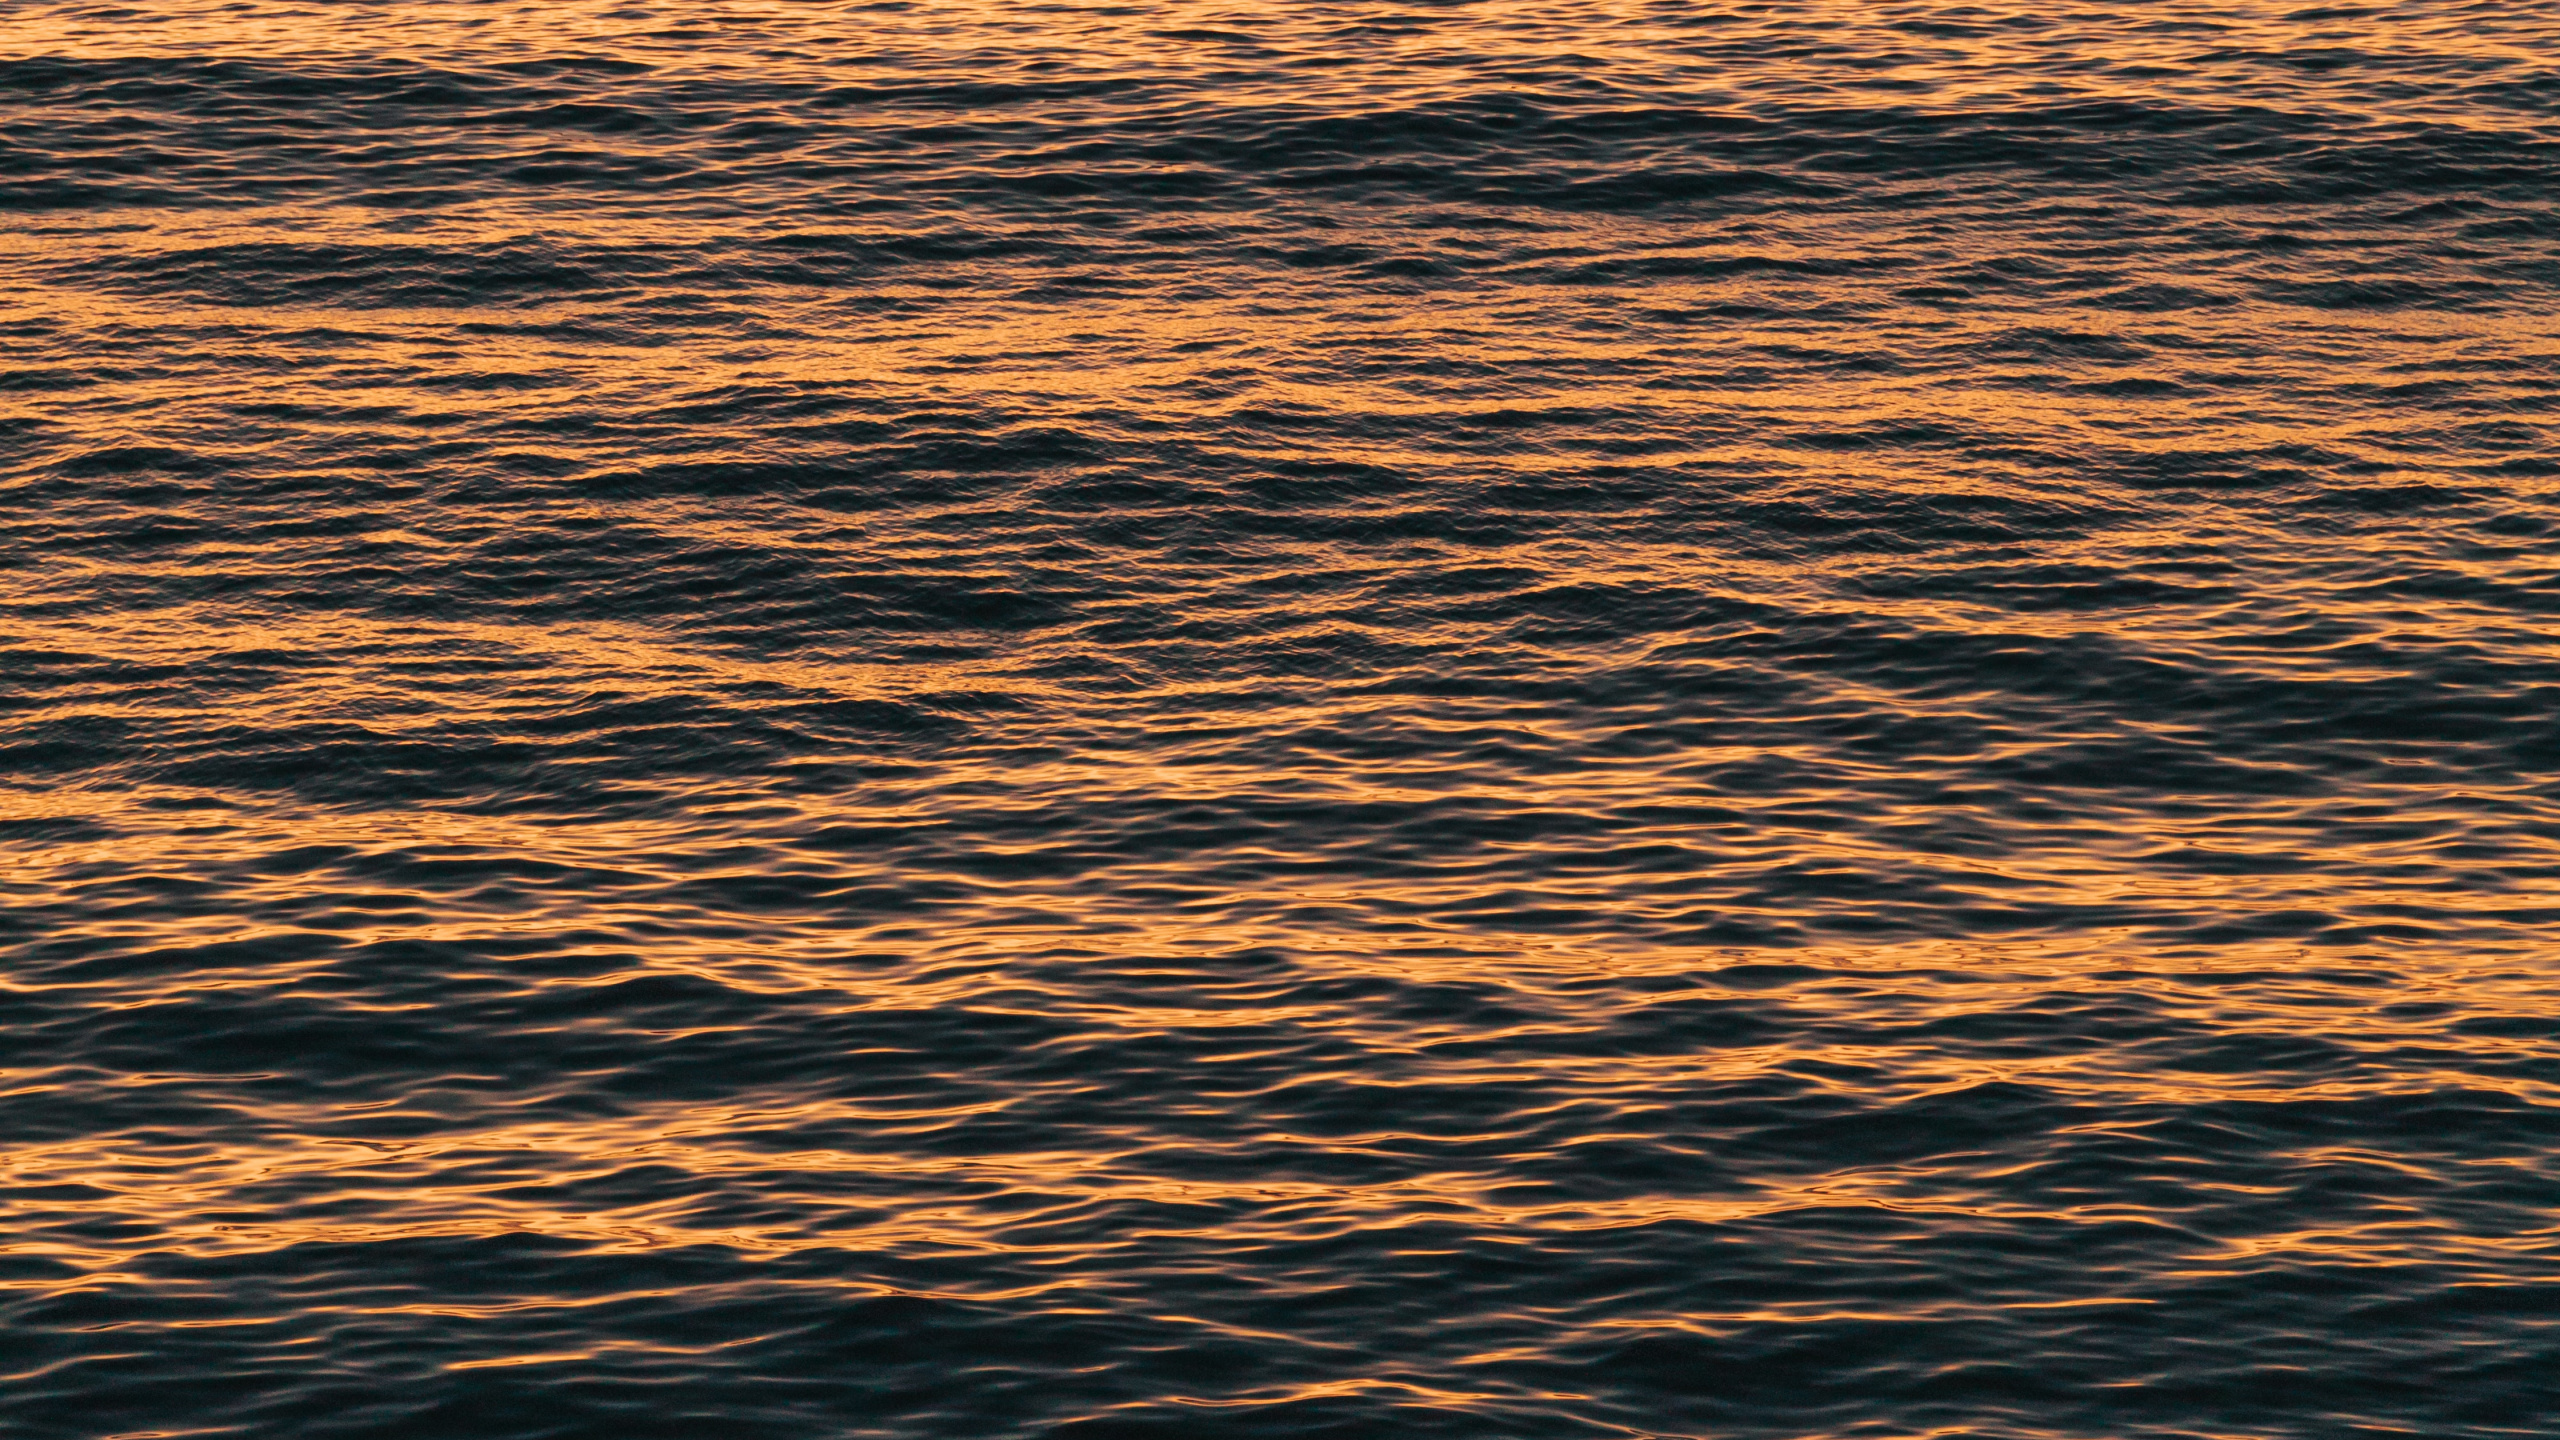 Agua, Mar, Oceano, Calma, Reflexión. Wallpaper in 2560x1440 Resolution